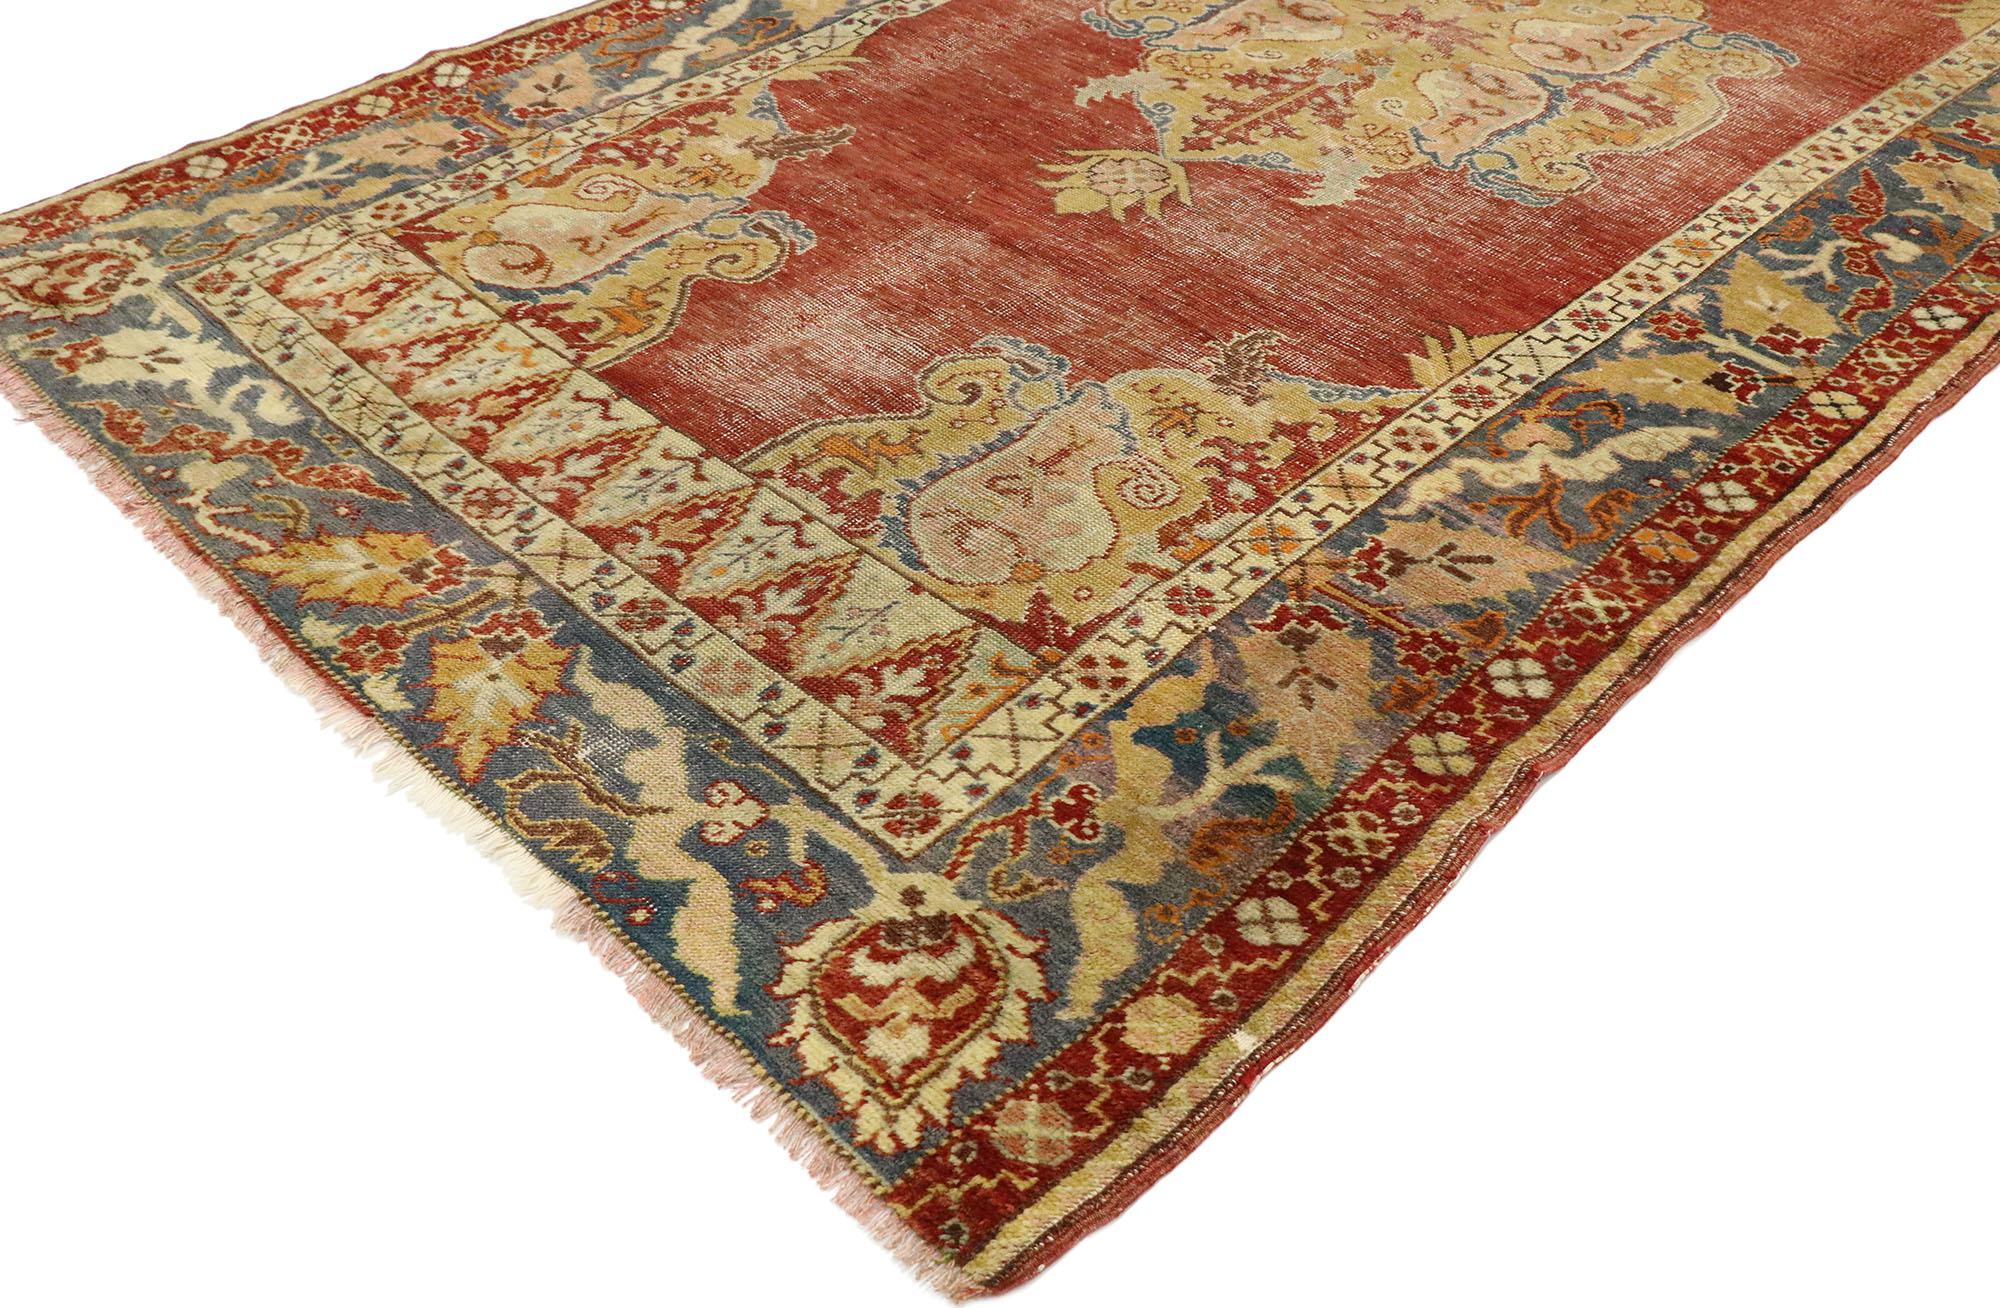 53149, tapis turc Oushak vintage avec style néoclassique Southern Living. Amoureusement usé par le temps et doté d'une sensibilité rustique intemporelle, ce tapis Oushak turc vintage en laine nouée à la main incarne à merveille le style néoclassique